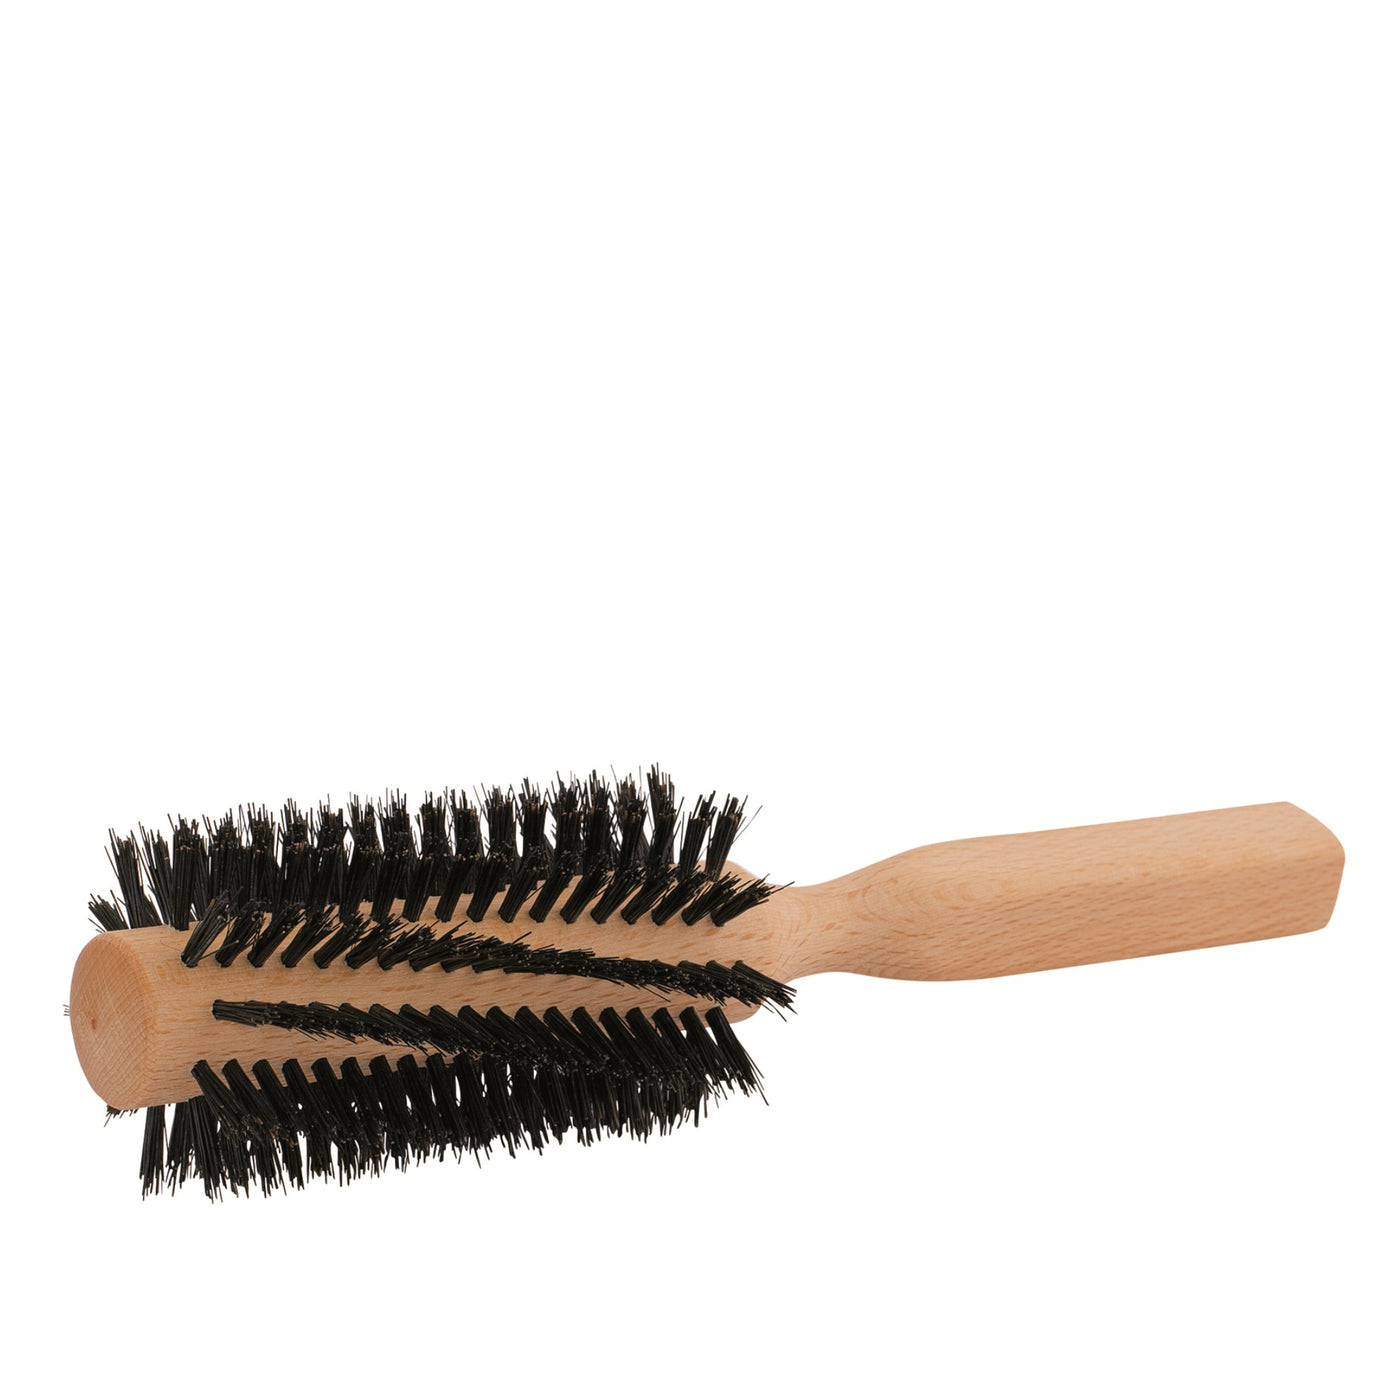 Redecker Round Bristle Hair Brush